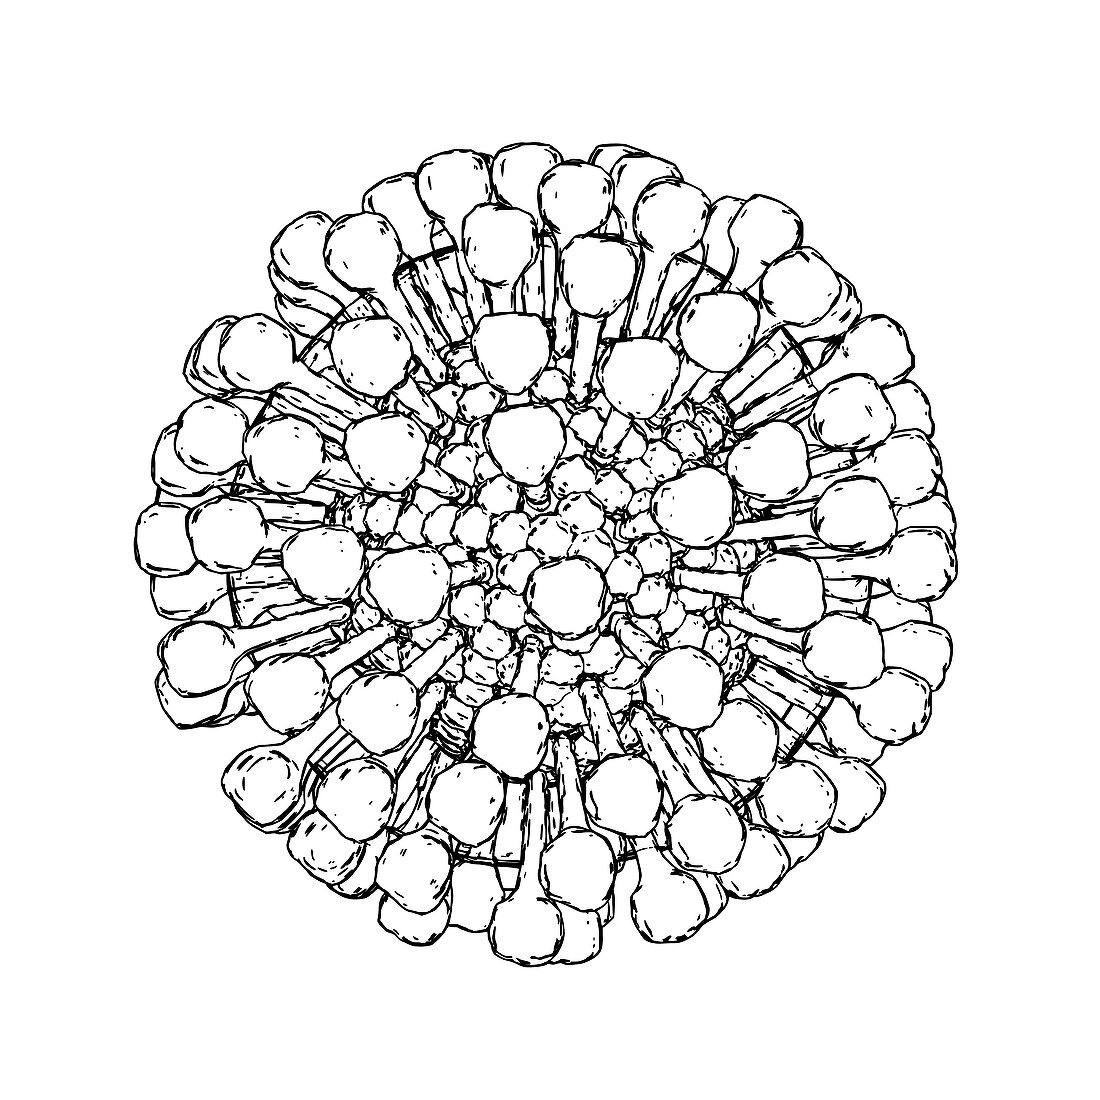 Lassa virus particle,illustration